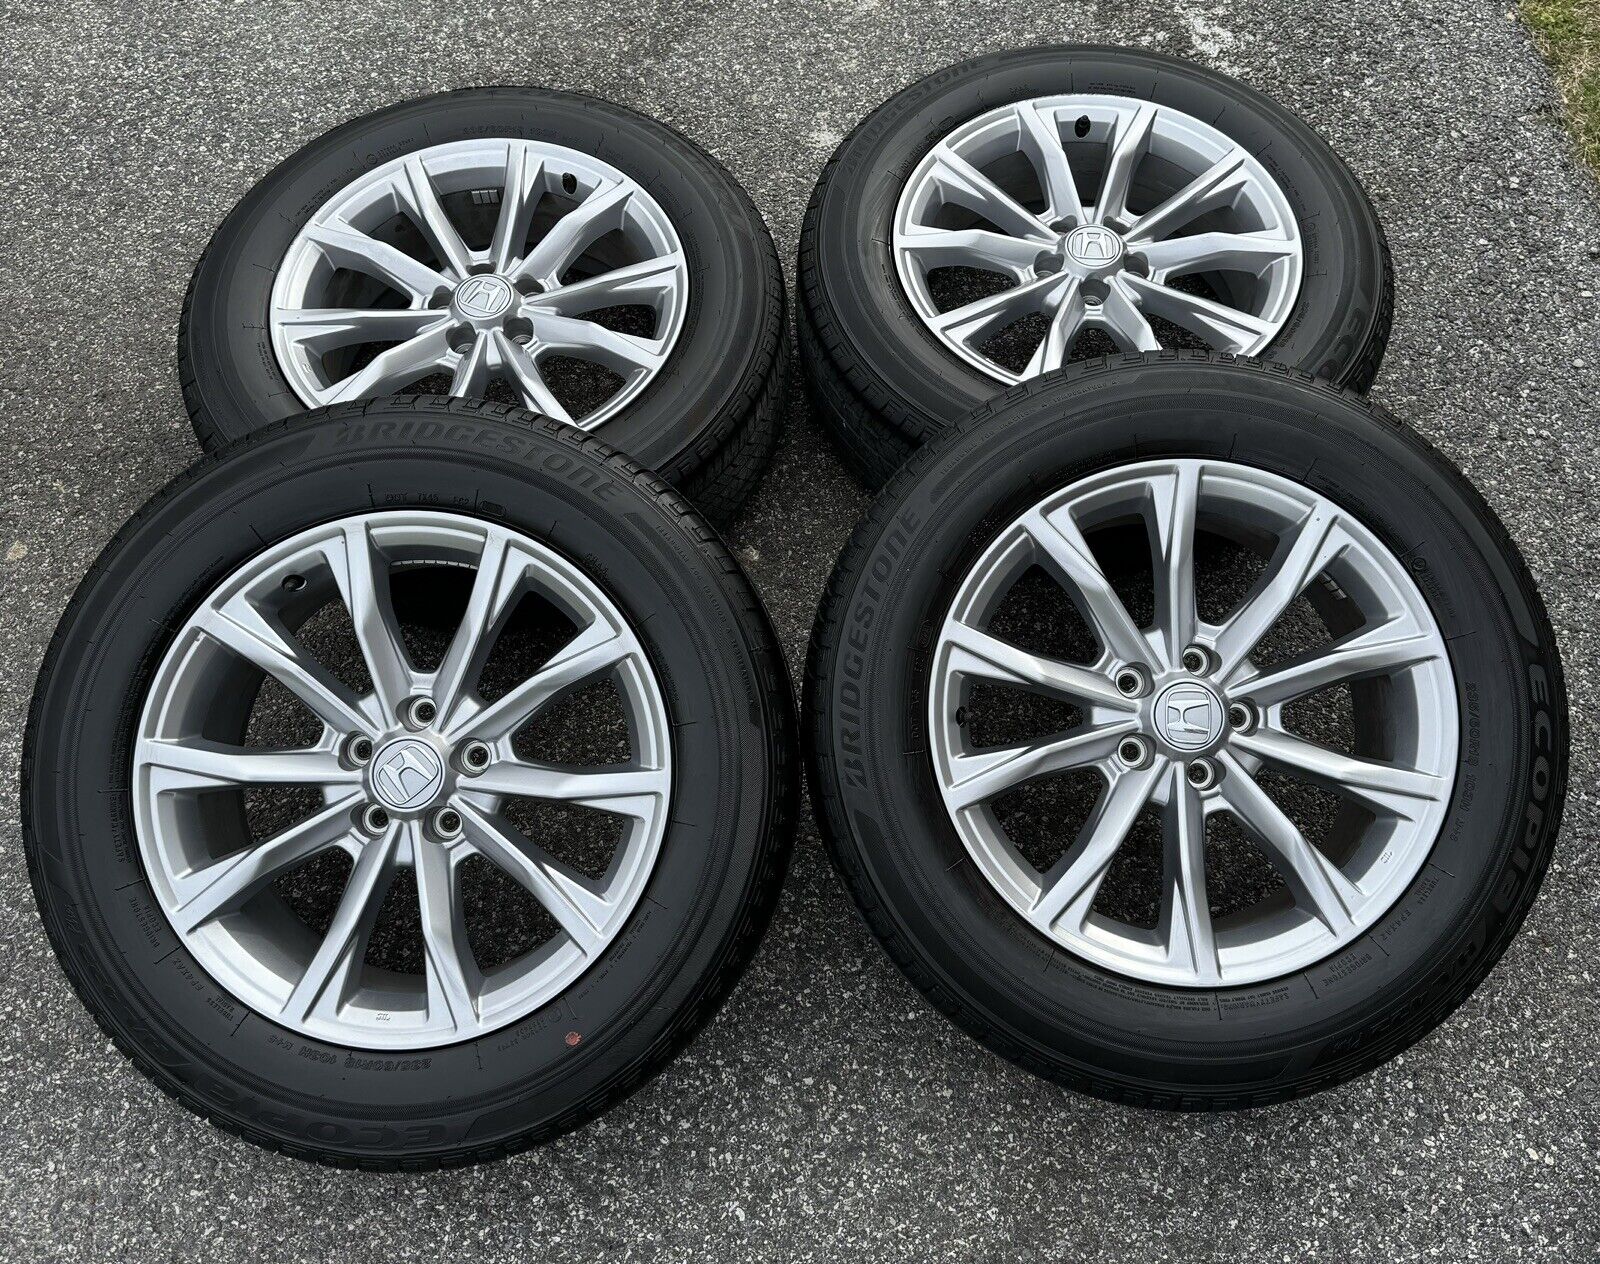 2023 Honda CR-V 18” Wheels Rims Tires 235/60/18 OEM 5x14.3